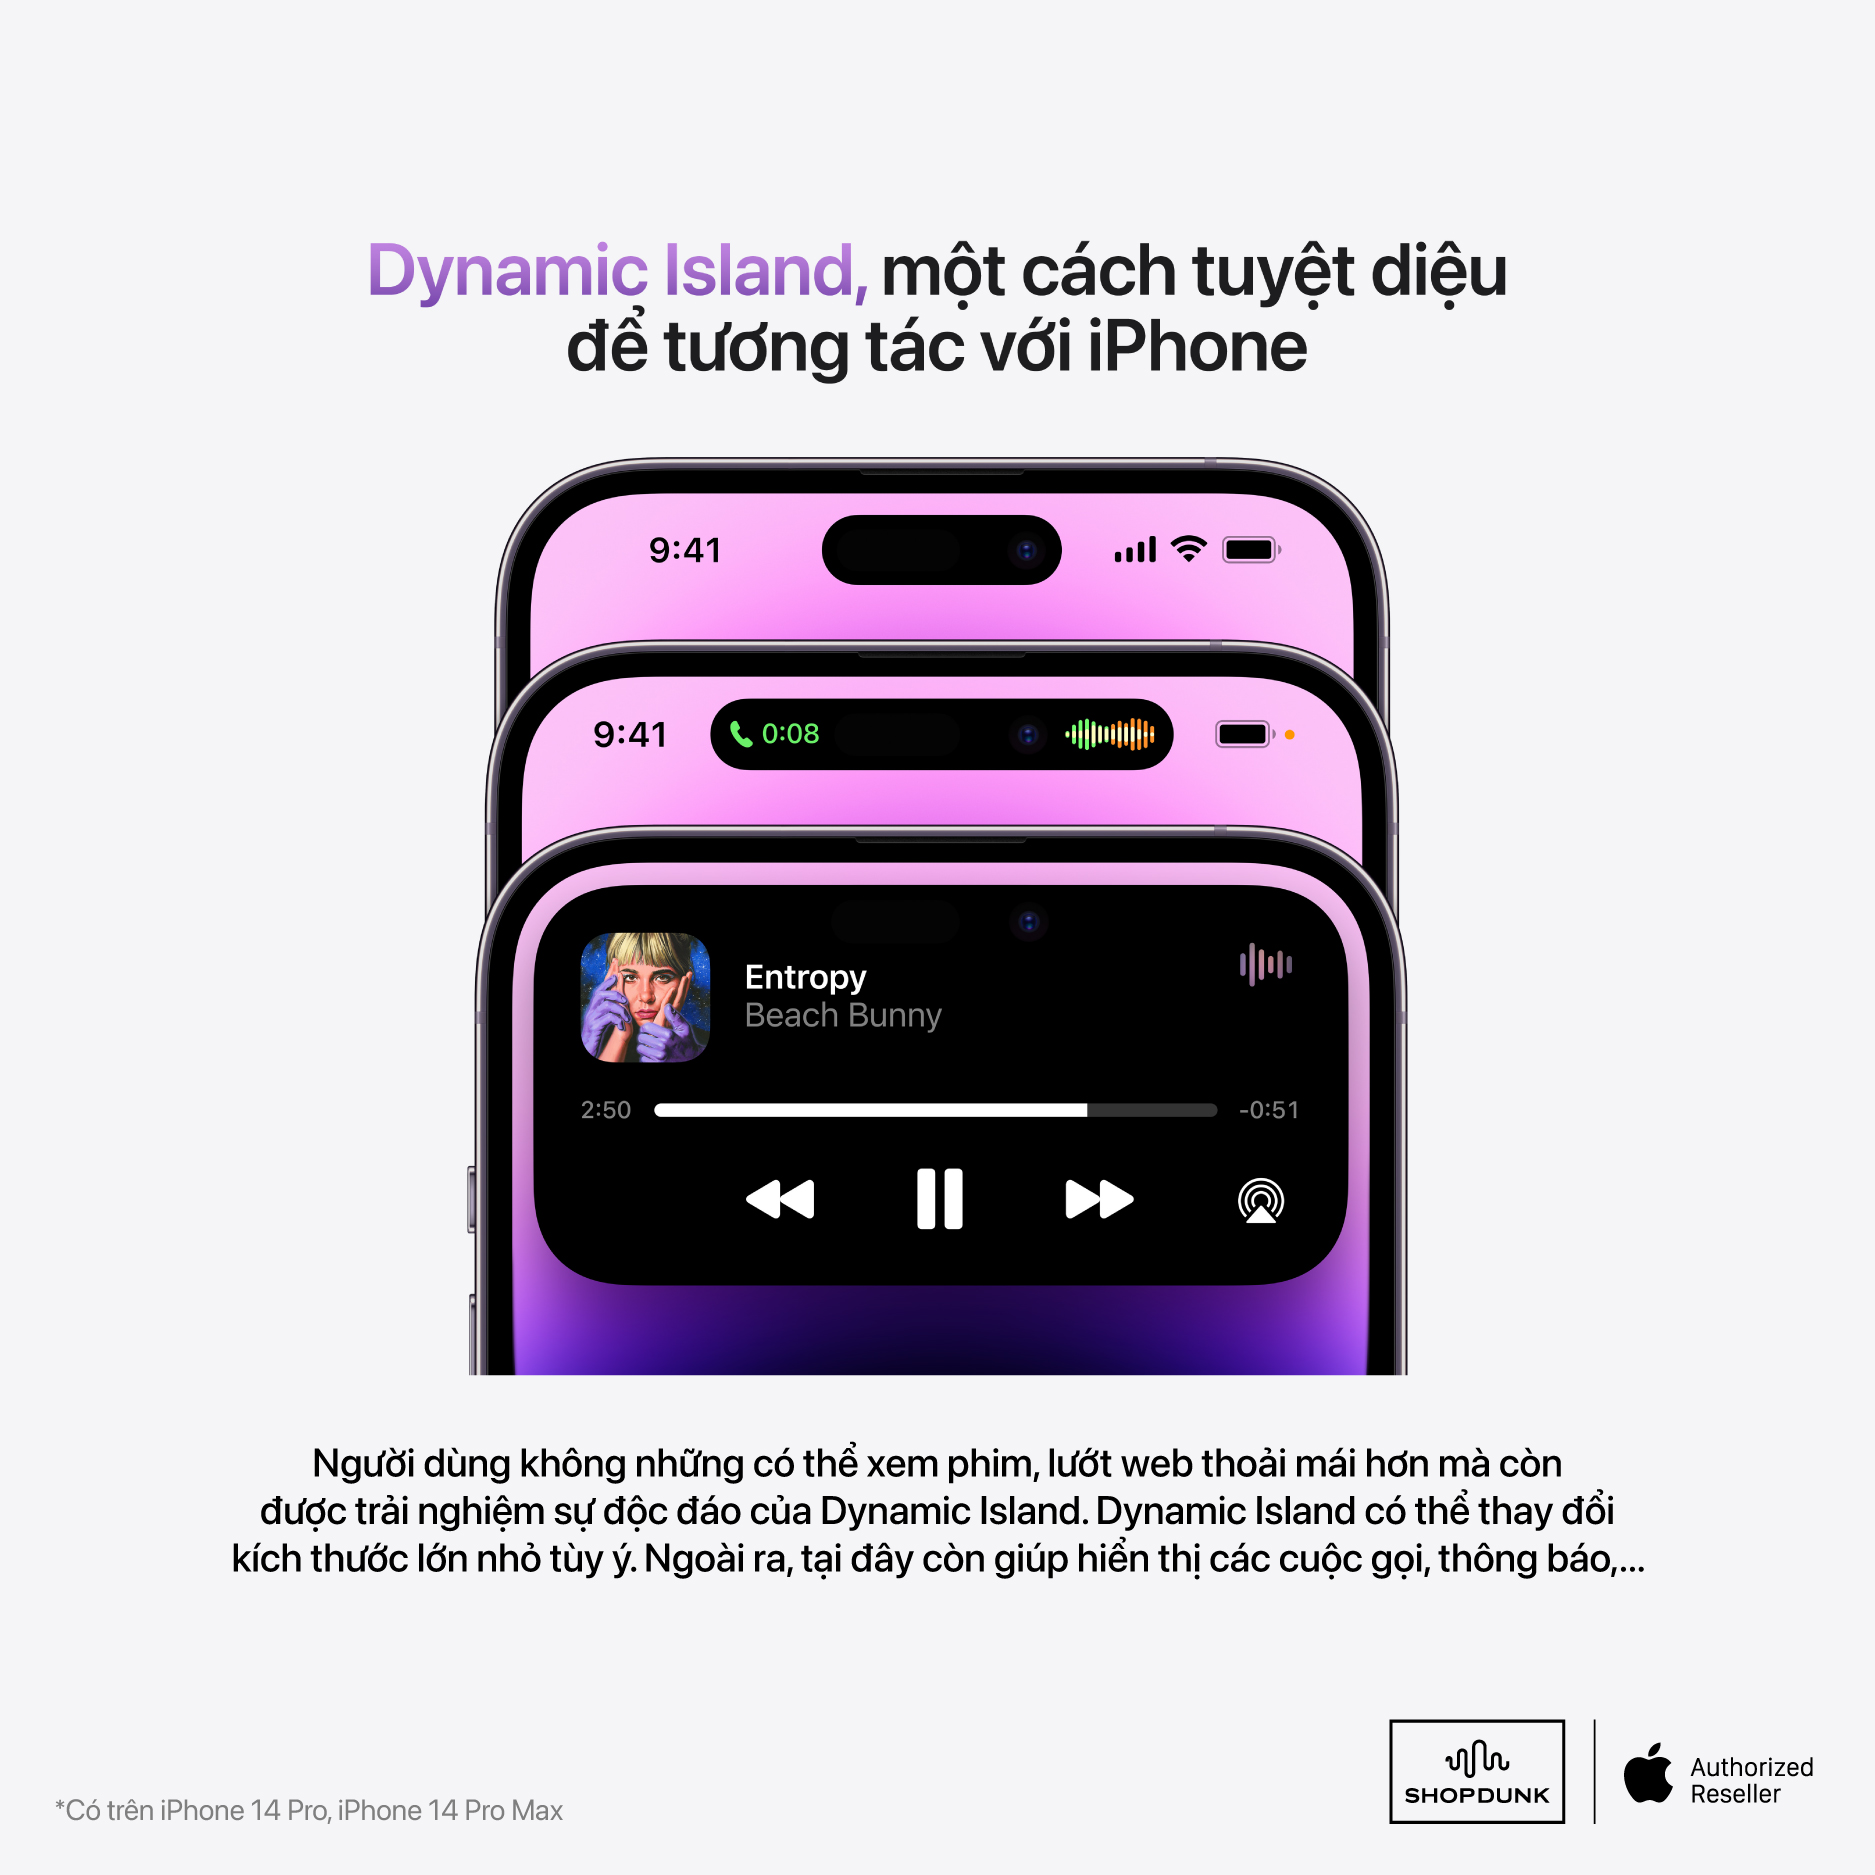 Dynamic Island - một trong những thay đổi lớn ở iPhone 14 Pro và Pro Max so với bản tiền nhiệm